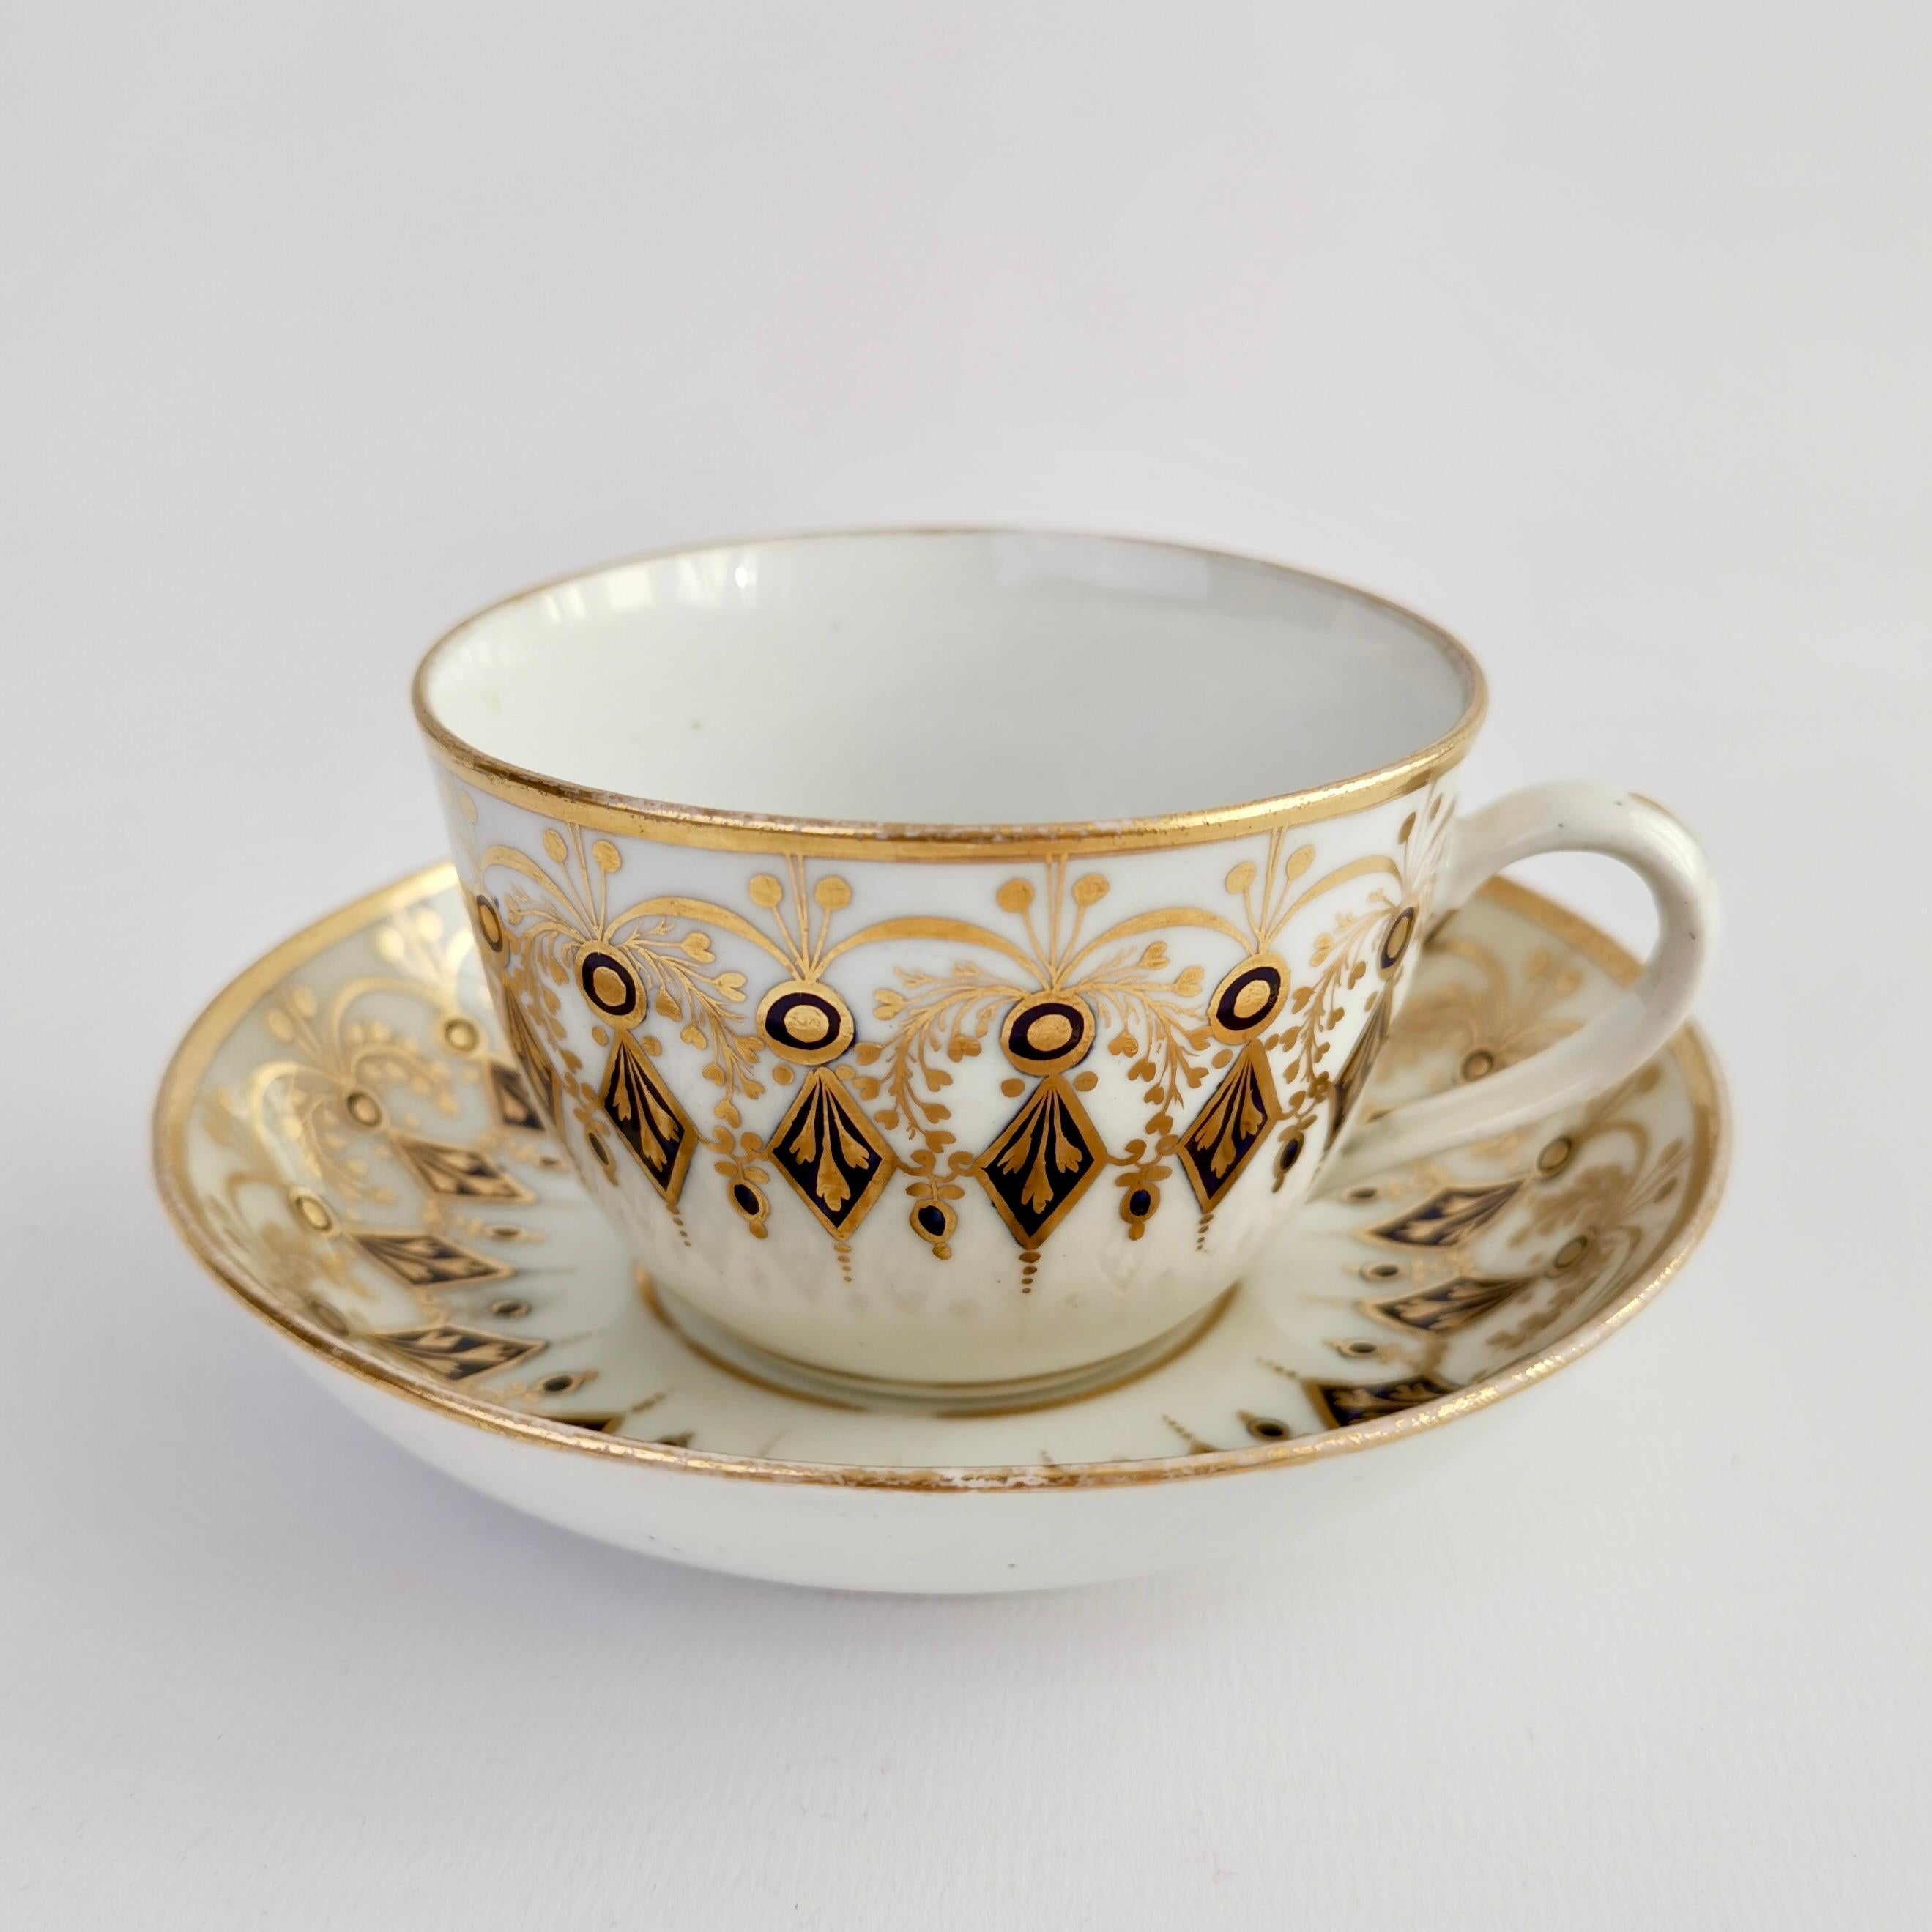 Regency New Hall Hybrid Paste Porcelain Teacup, Neoclassical Cobalt Blue Gilt, ca 1810 For Sale